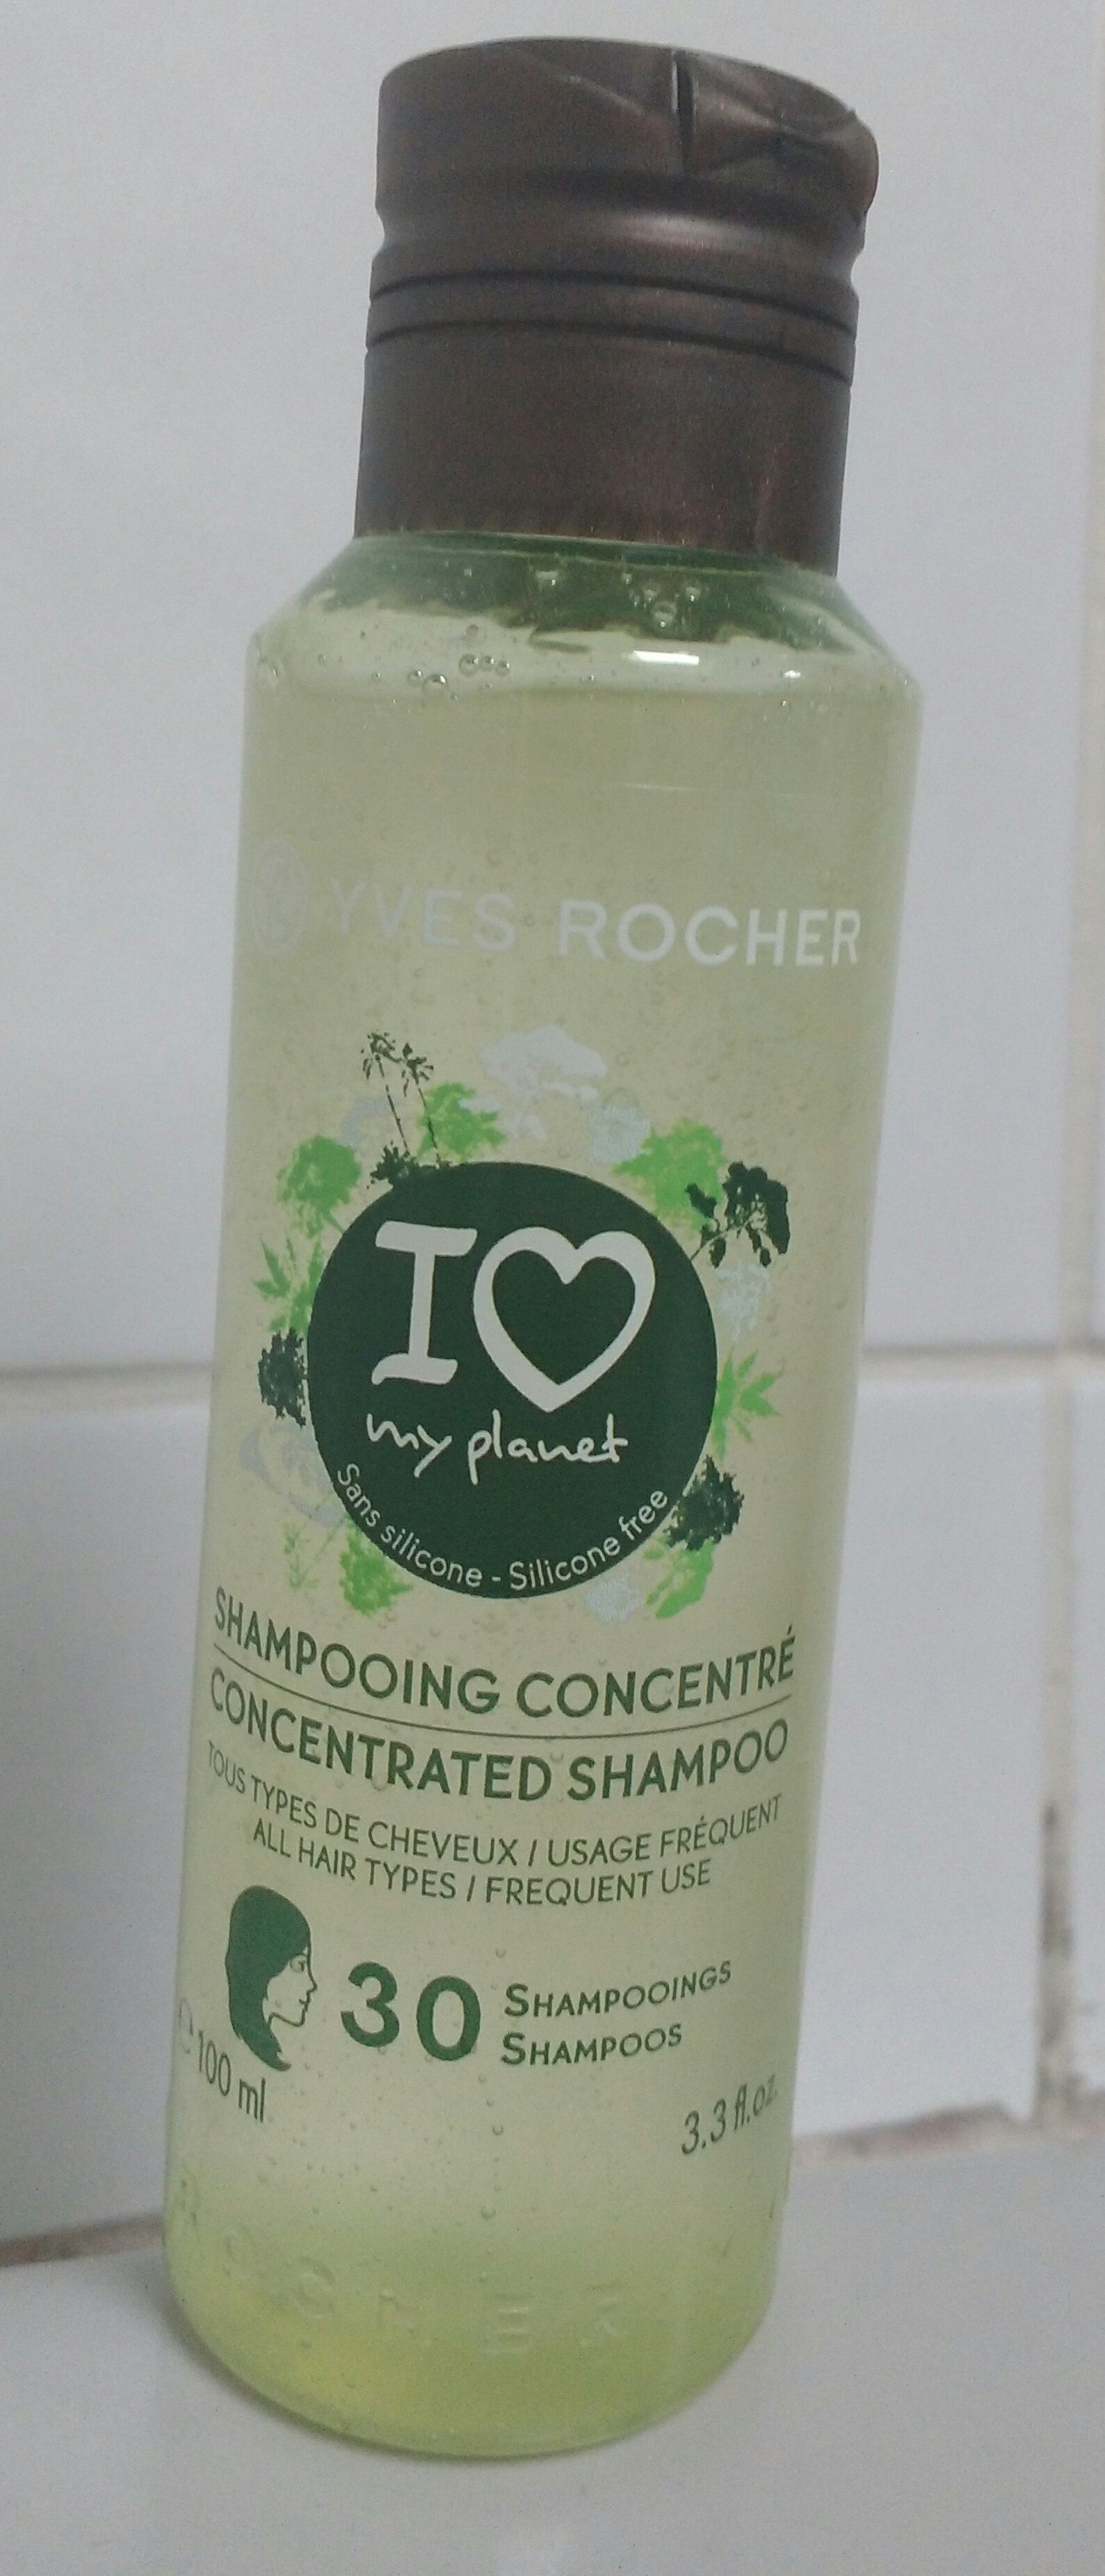 Shampooing concentré - Tous types de cheveux - Product - fr